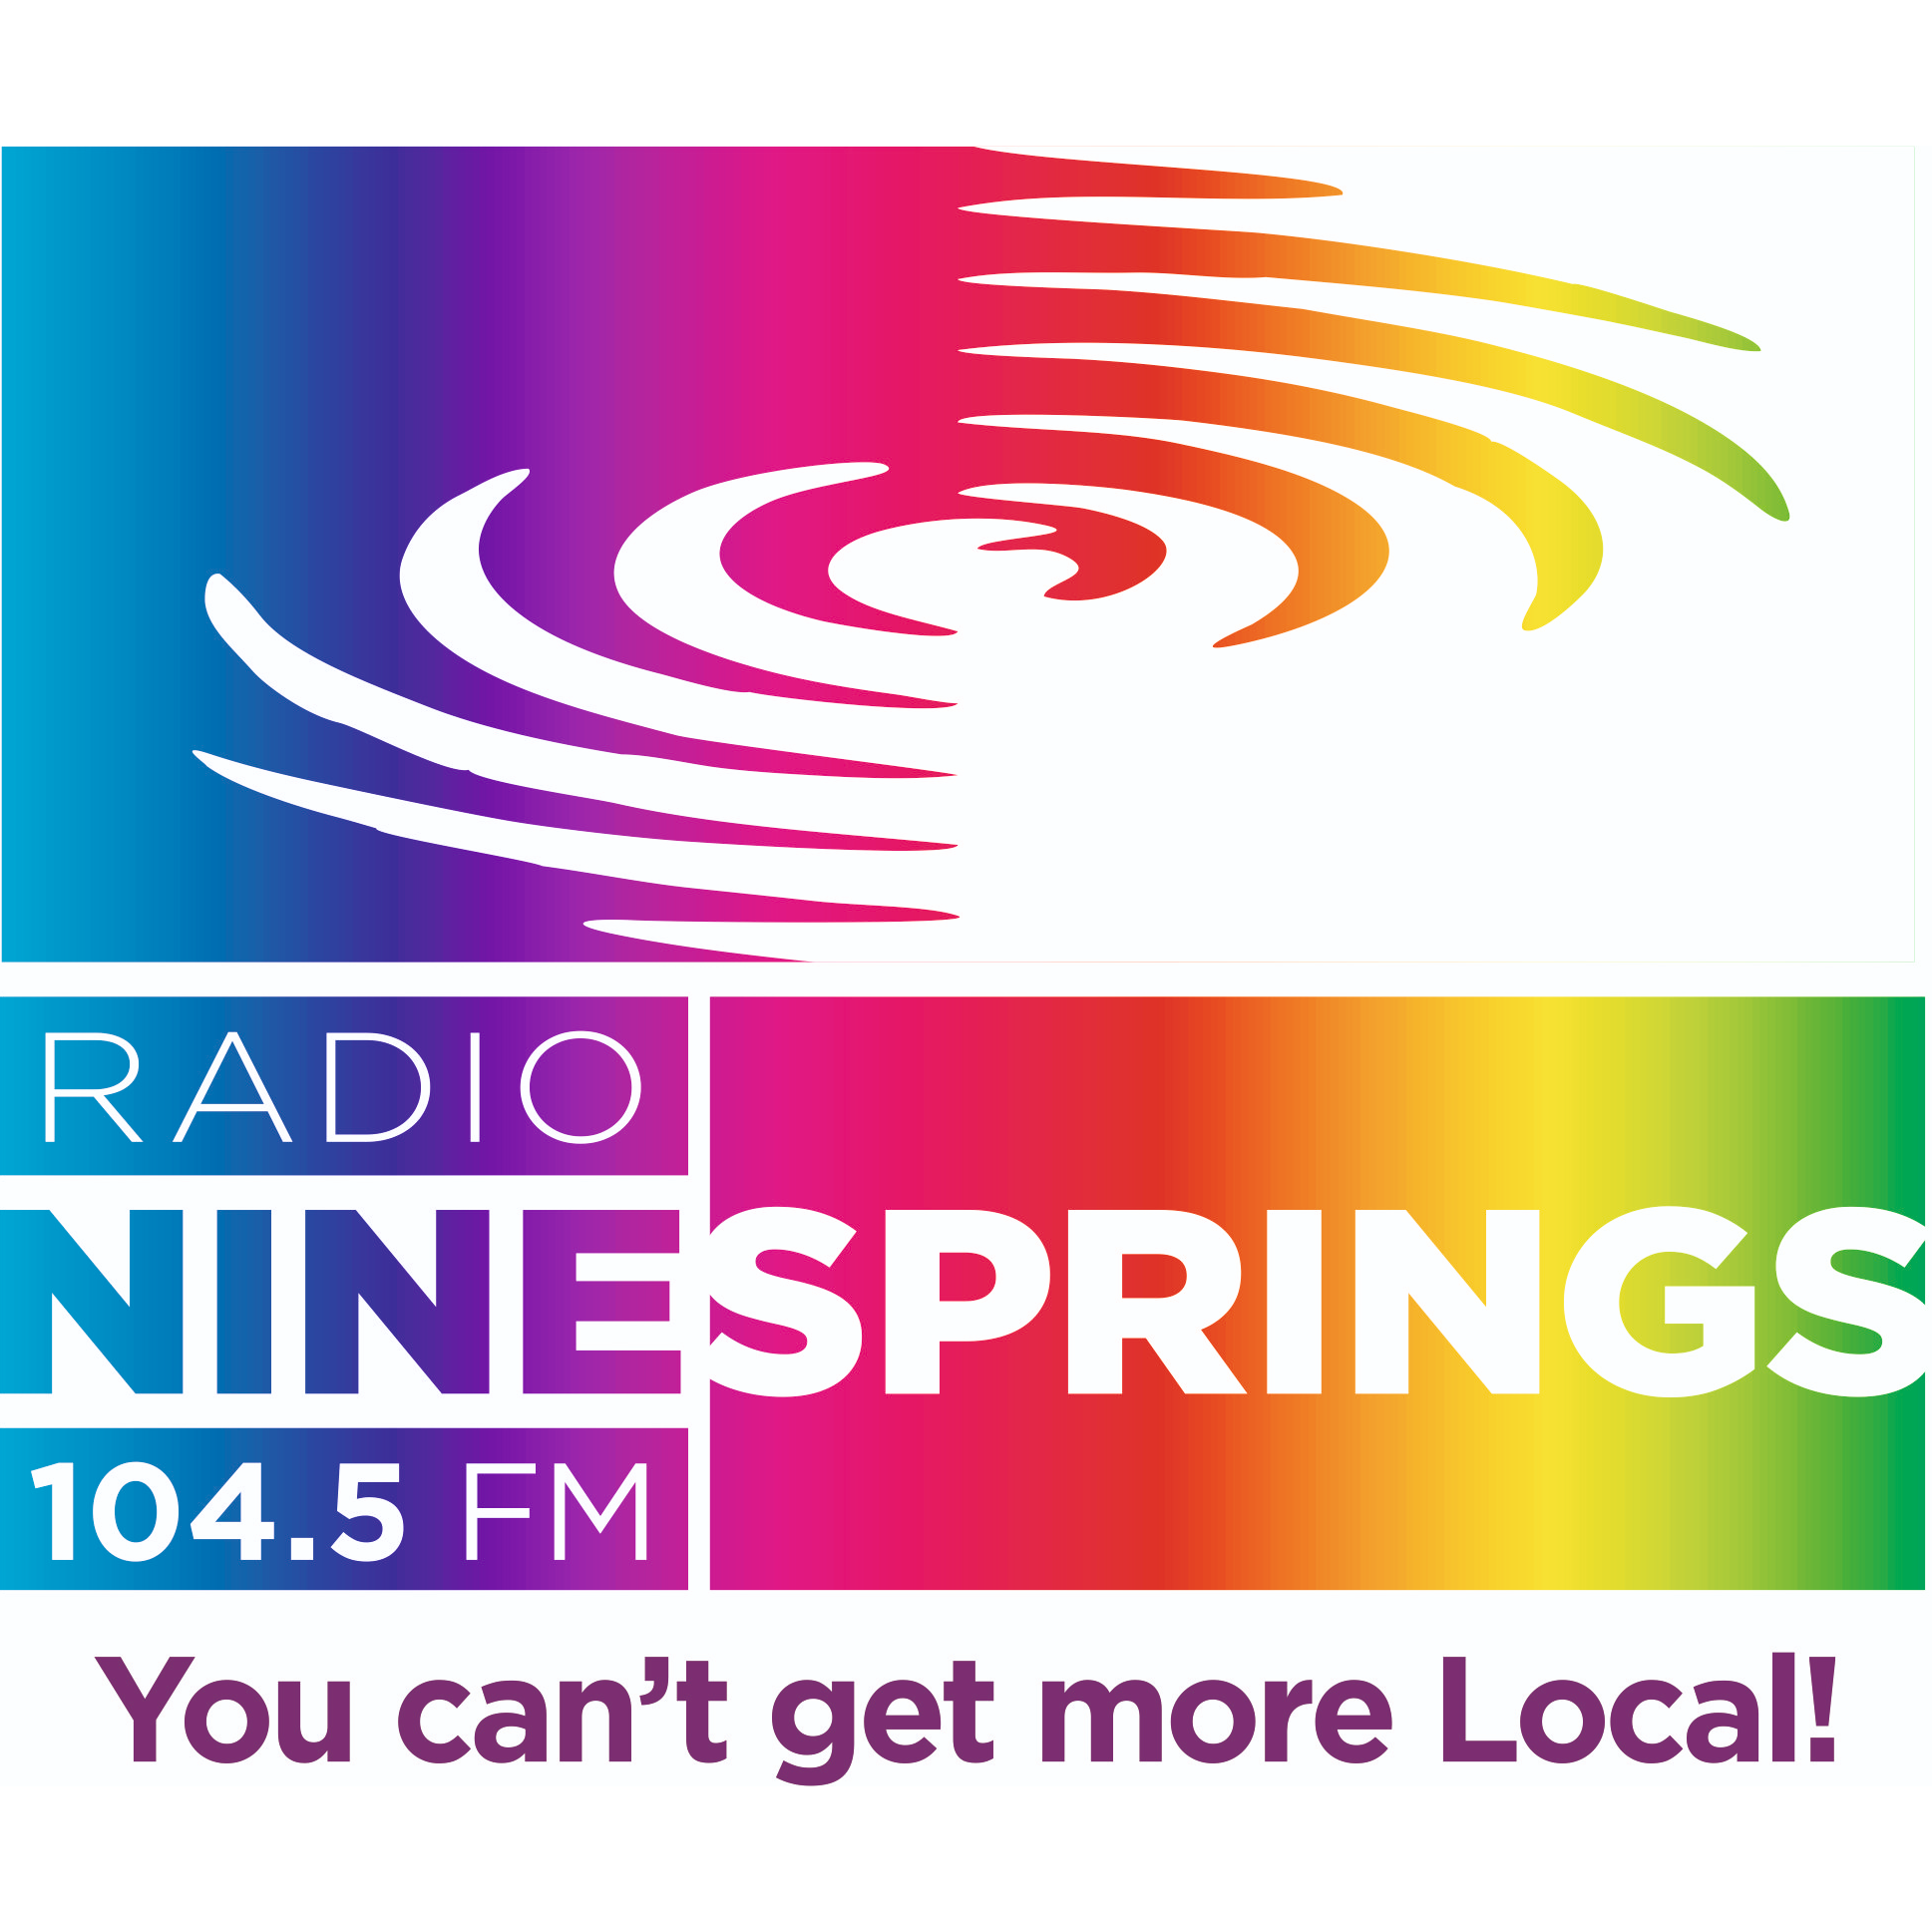 Radio Ninesprings 104.5FM